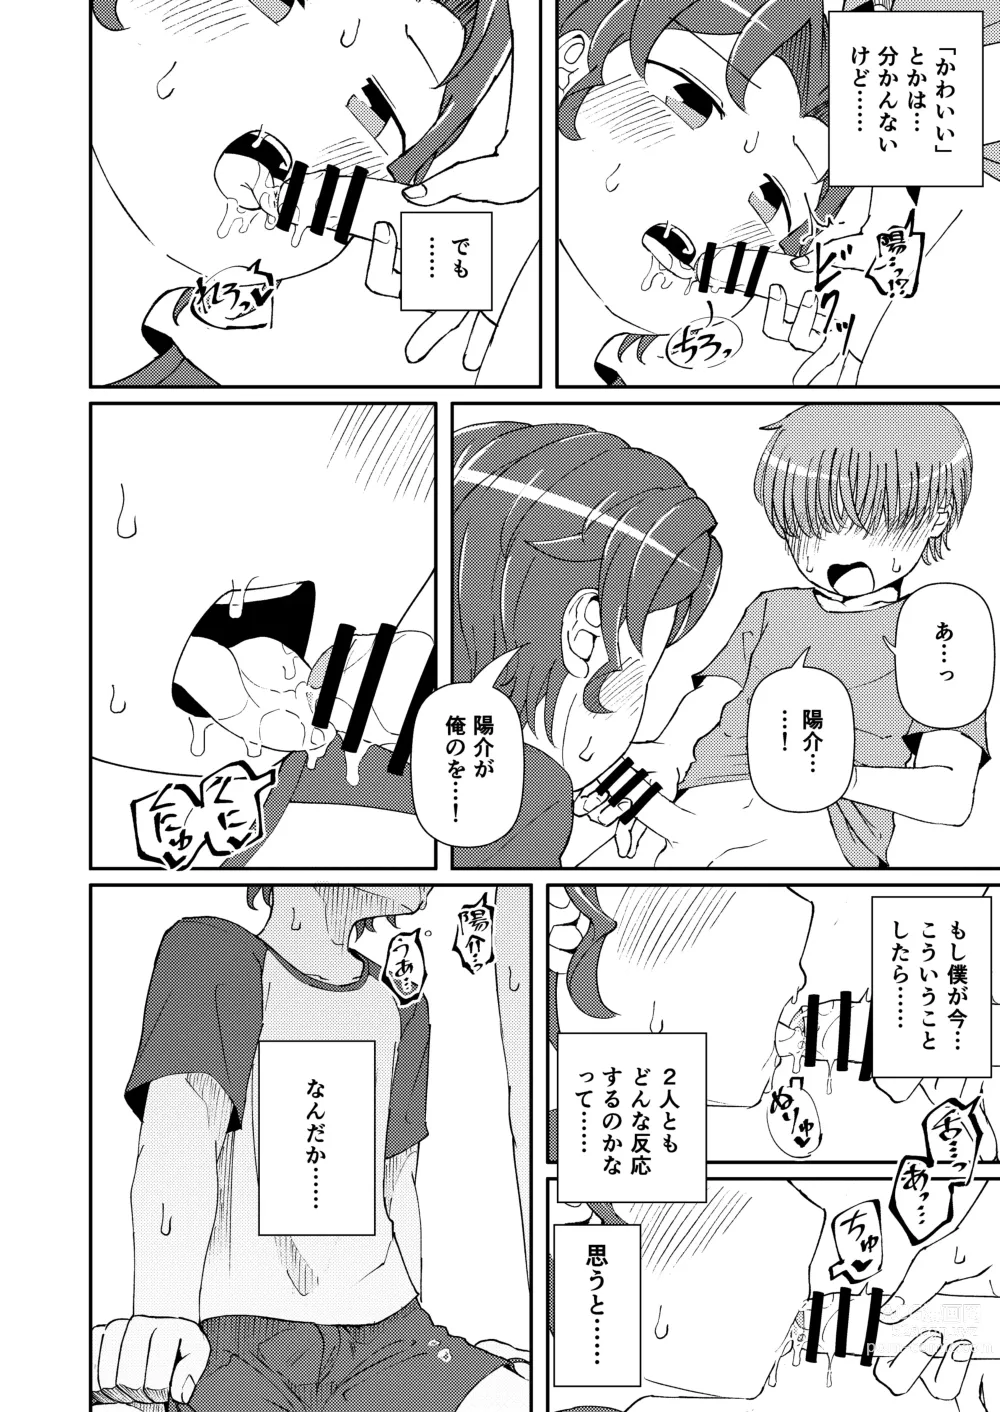 Page 18 of doujinshi Shoujiki Iu to,